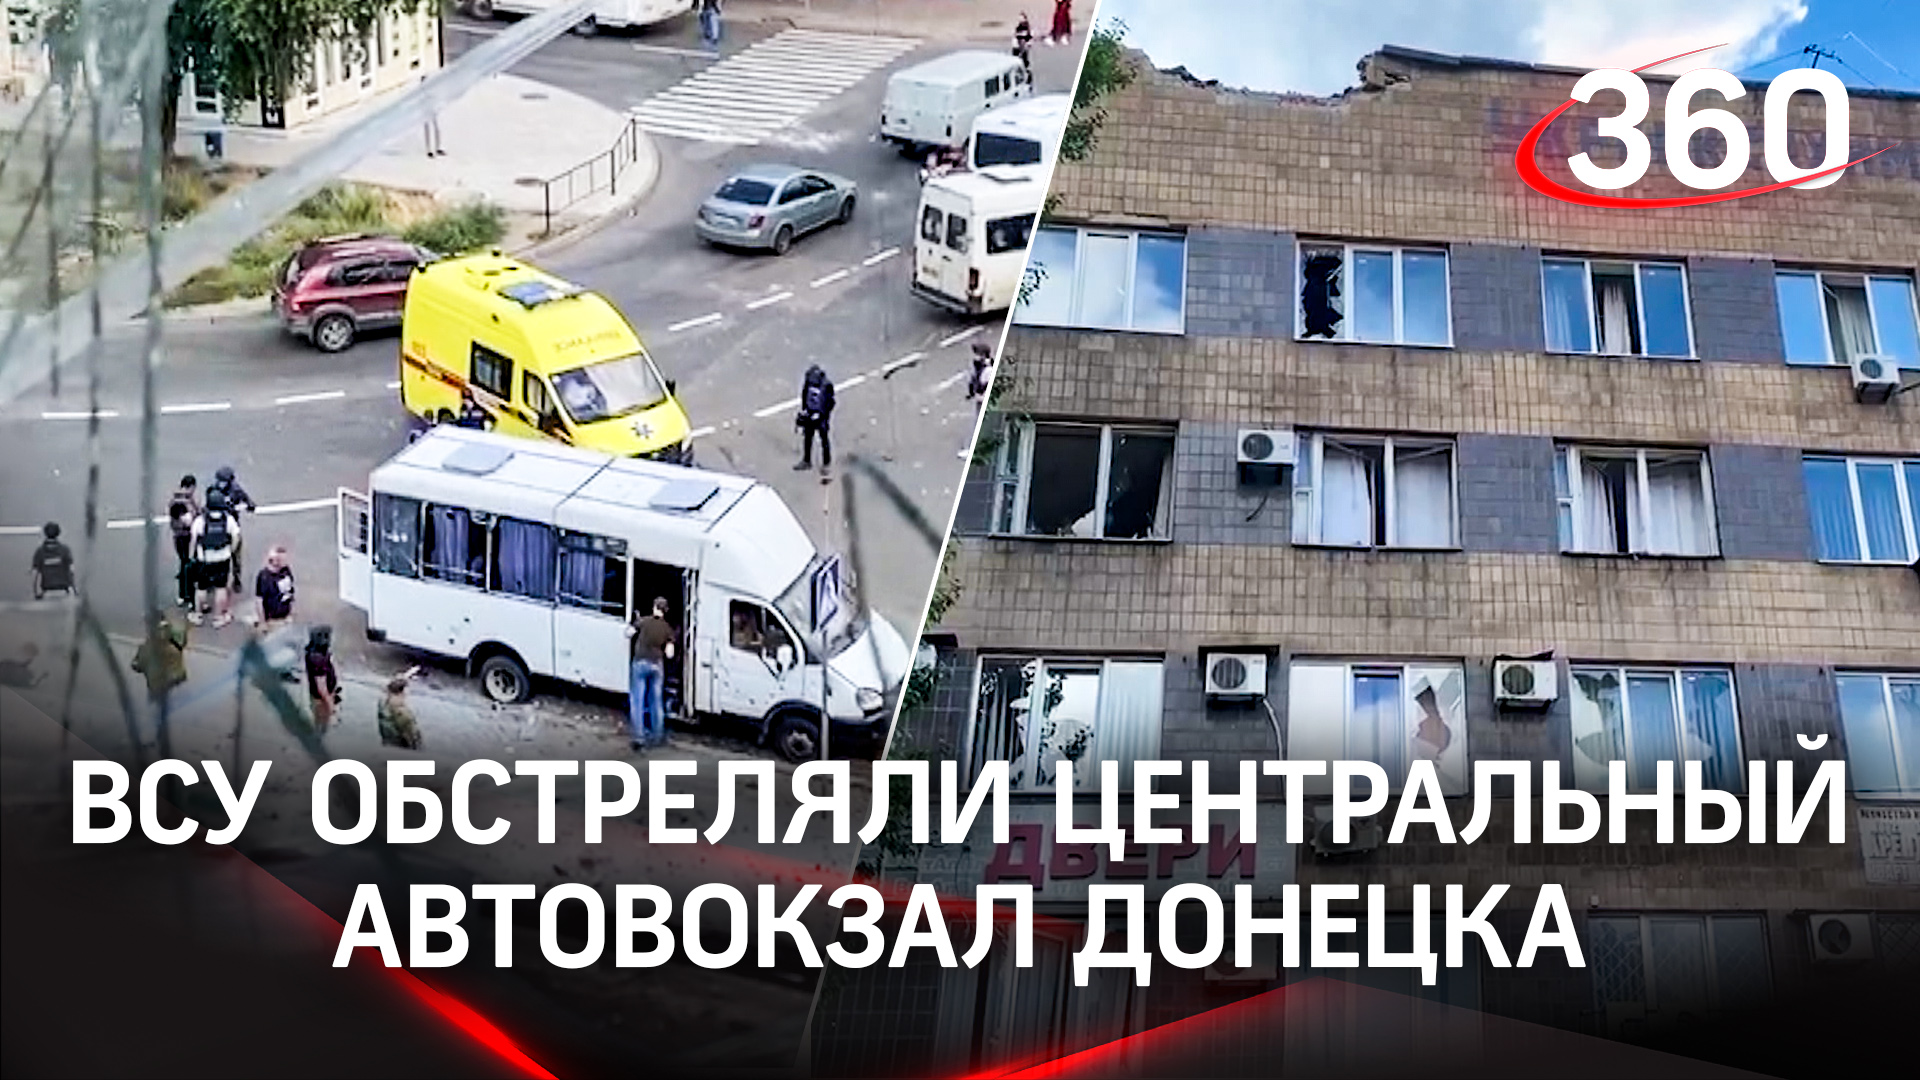 Кровь в маршрутке и оторванные ноги - ВСУ обстреляли центральный автовокзал Донецка